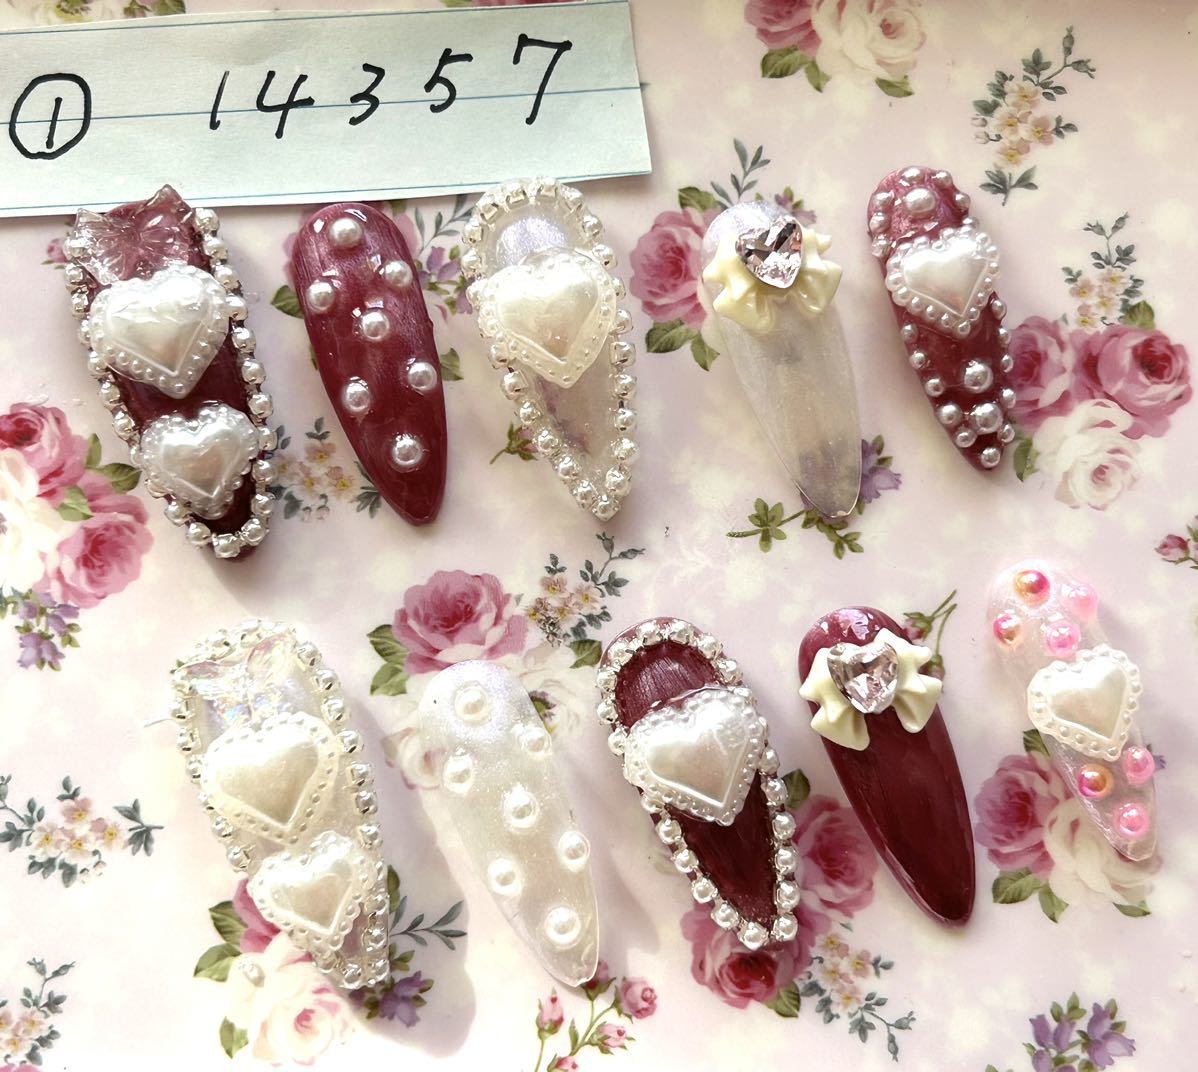  снижение цены! 129 искусственные ногти 1 размер большой Heart жемчуг ga- Lee ....y2k Корея серия . рука длинный серия Gothic and Lolita шт ..N@min